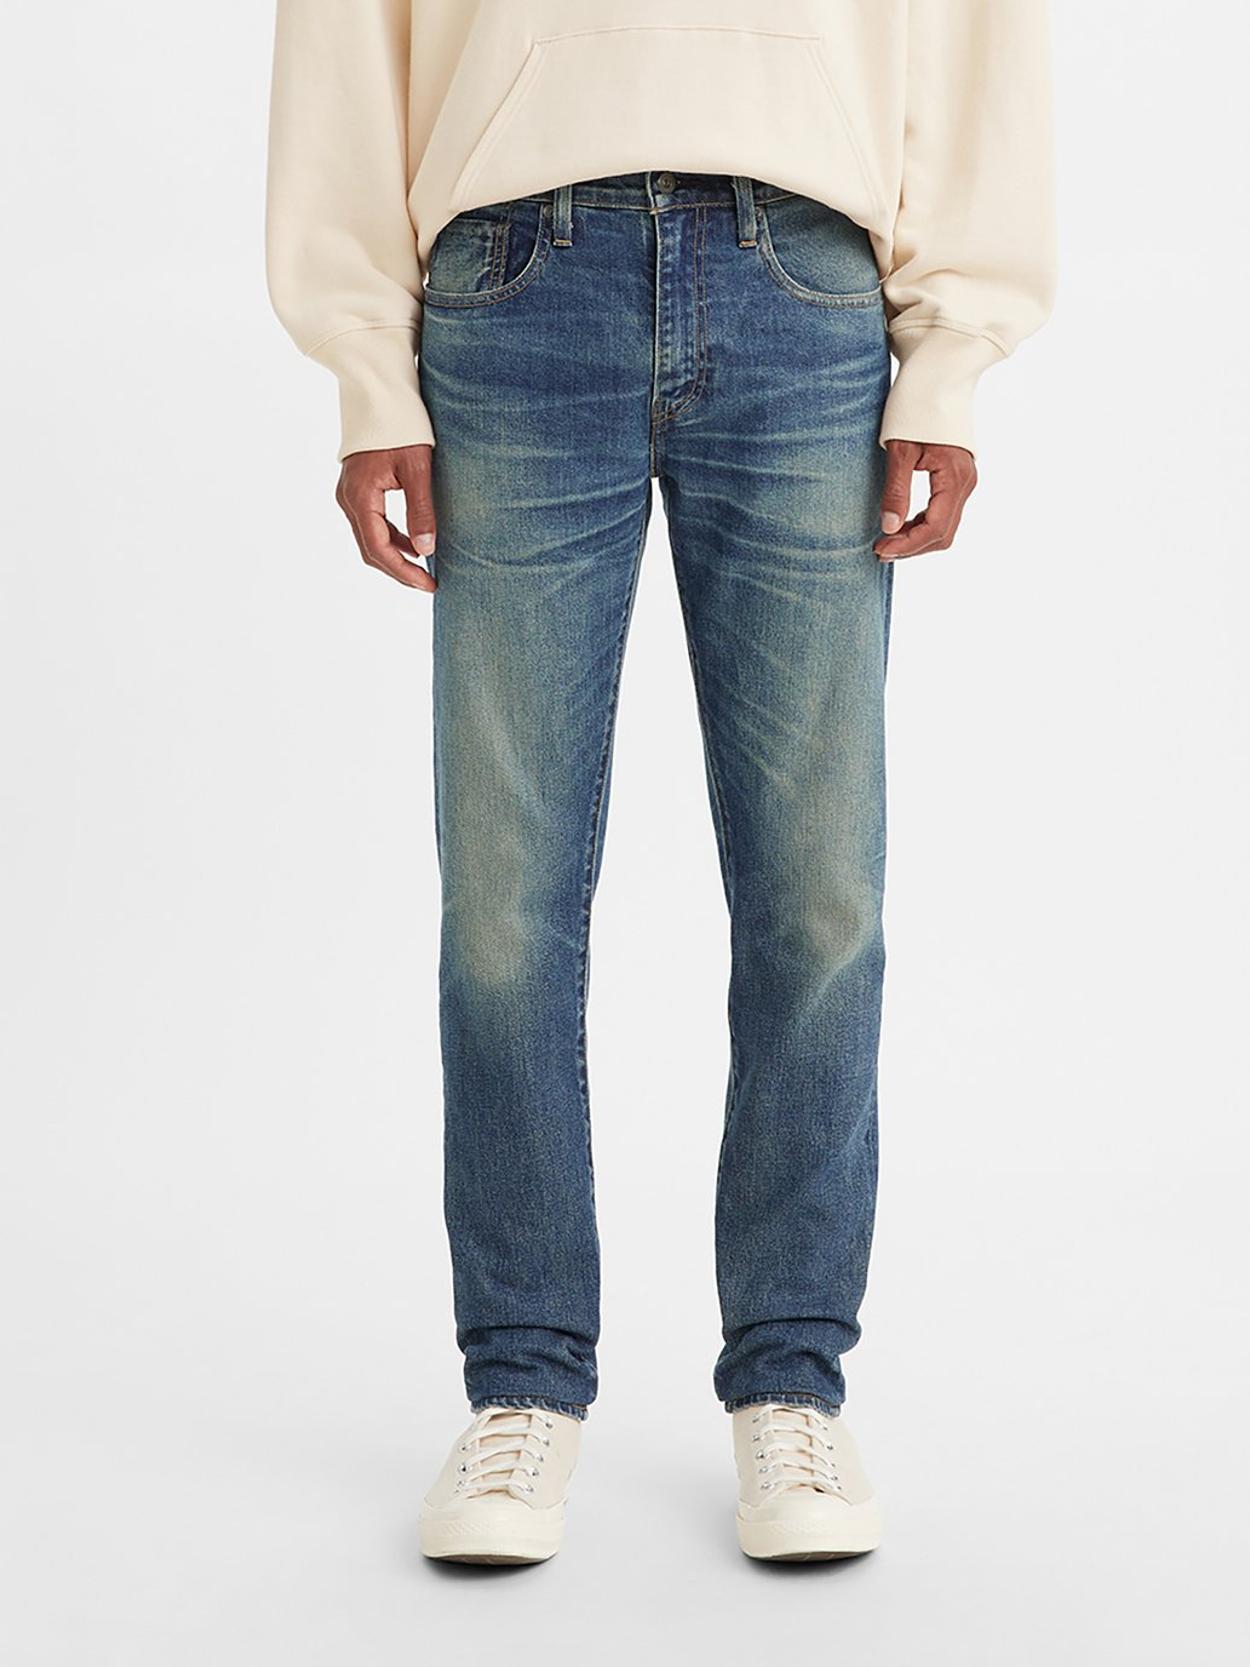 Buy Levi's® Made in Japan Men's 512™ Slim Taper Jeans | Levi’s ...